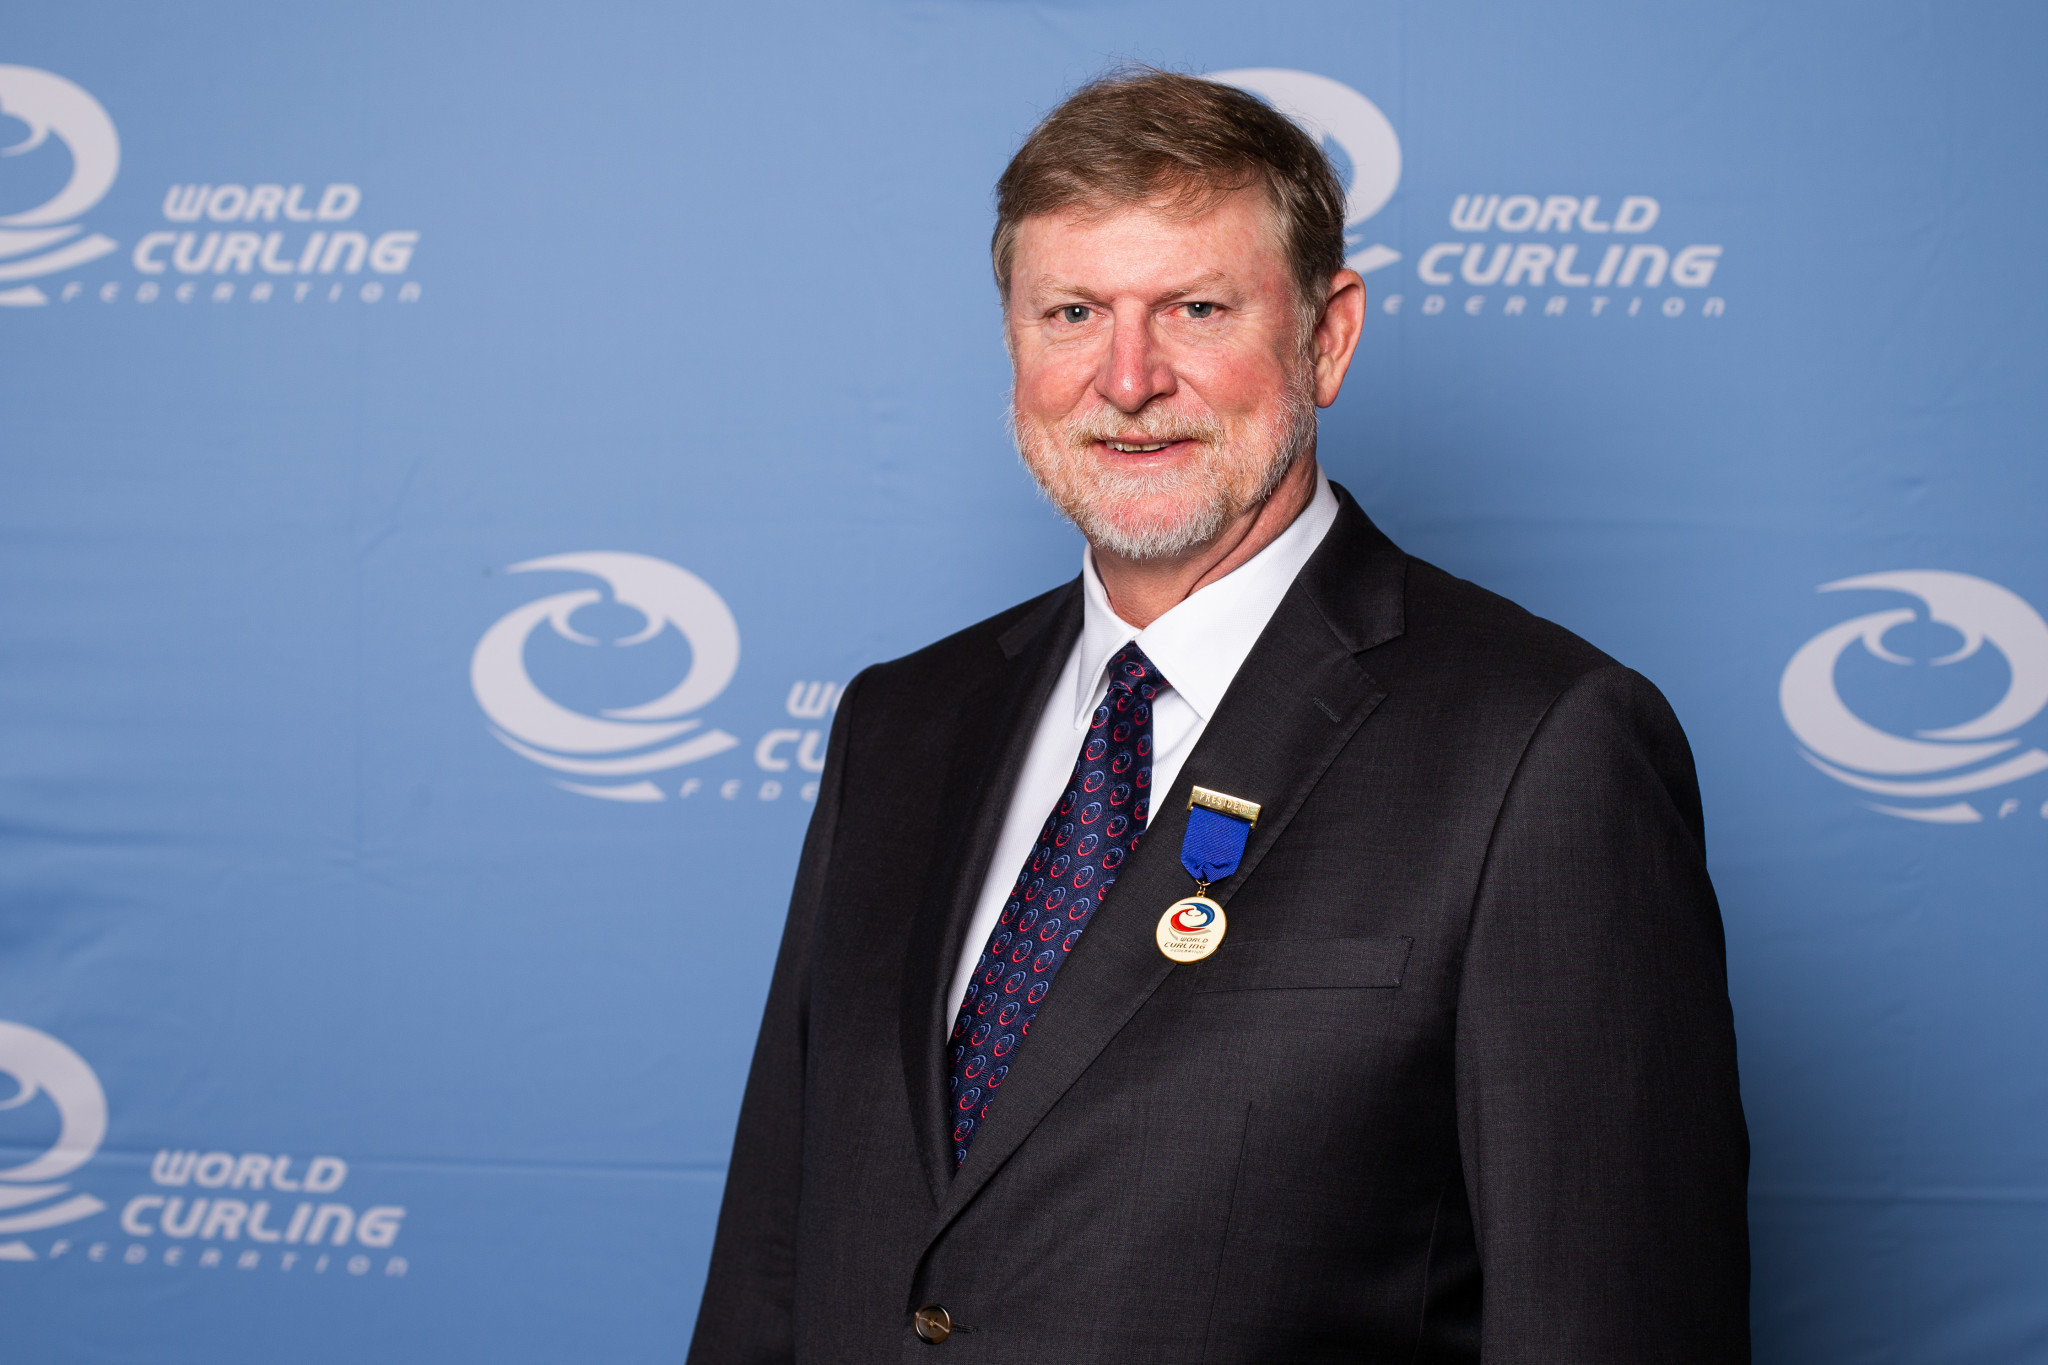 World Curling Federation President Beau Welling said Canada 